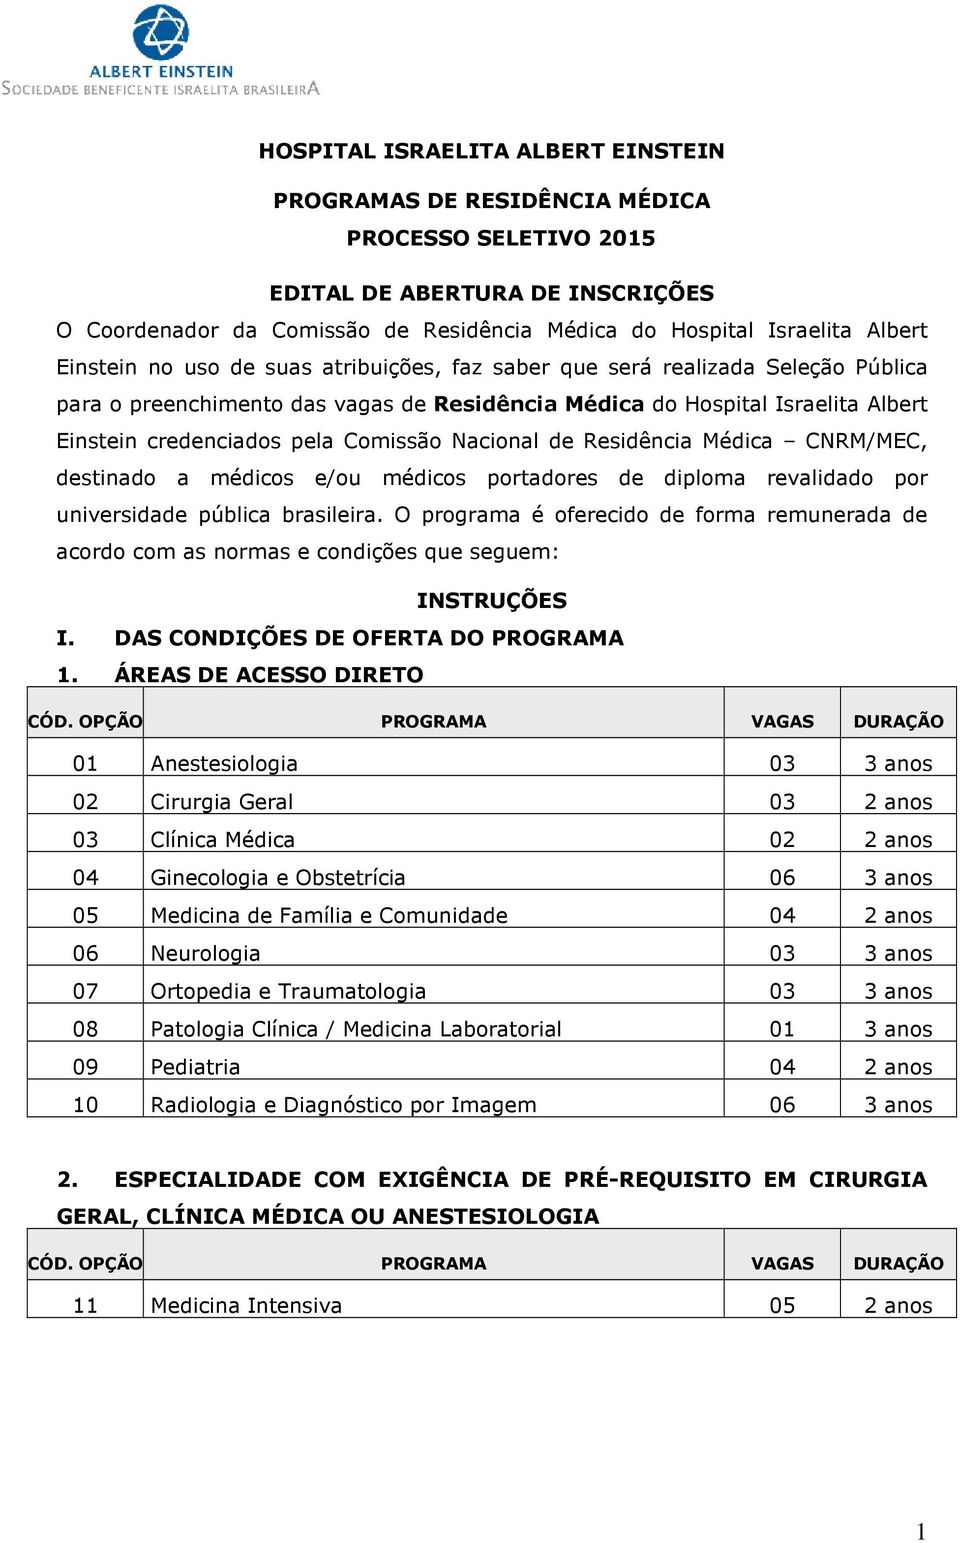 Nacional de Residência Médica CNRM/MEC, destinado a médicos e/ou médicos portadores de diploma revalidado por universidade pública brasileira.